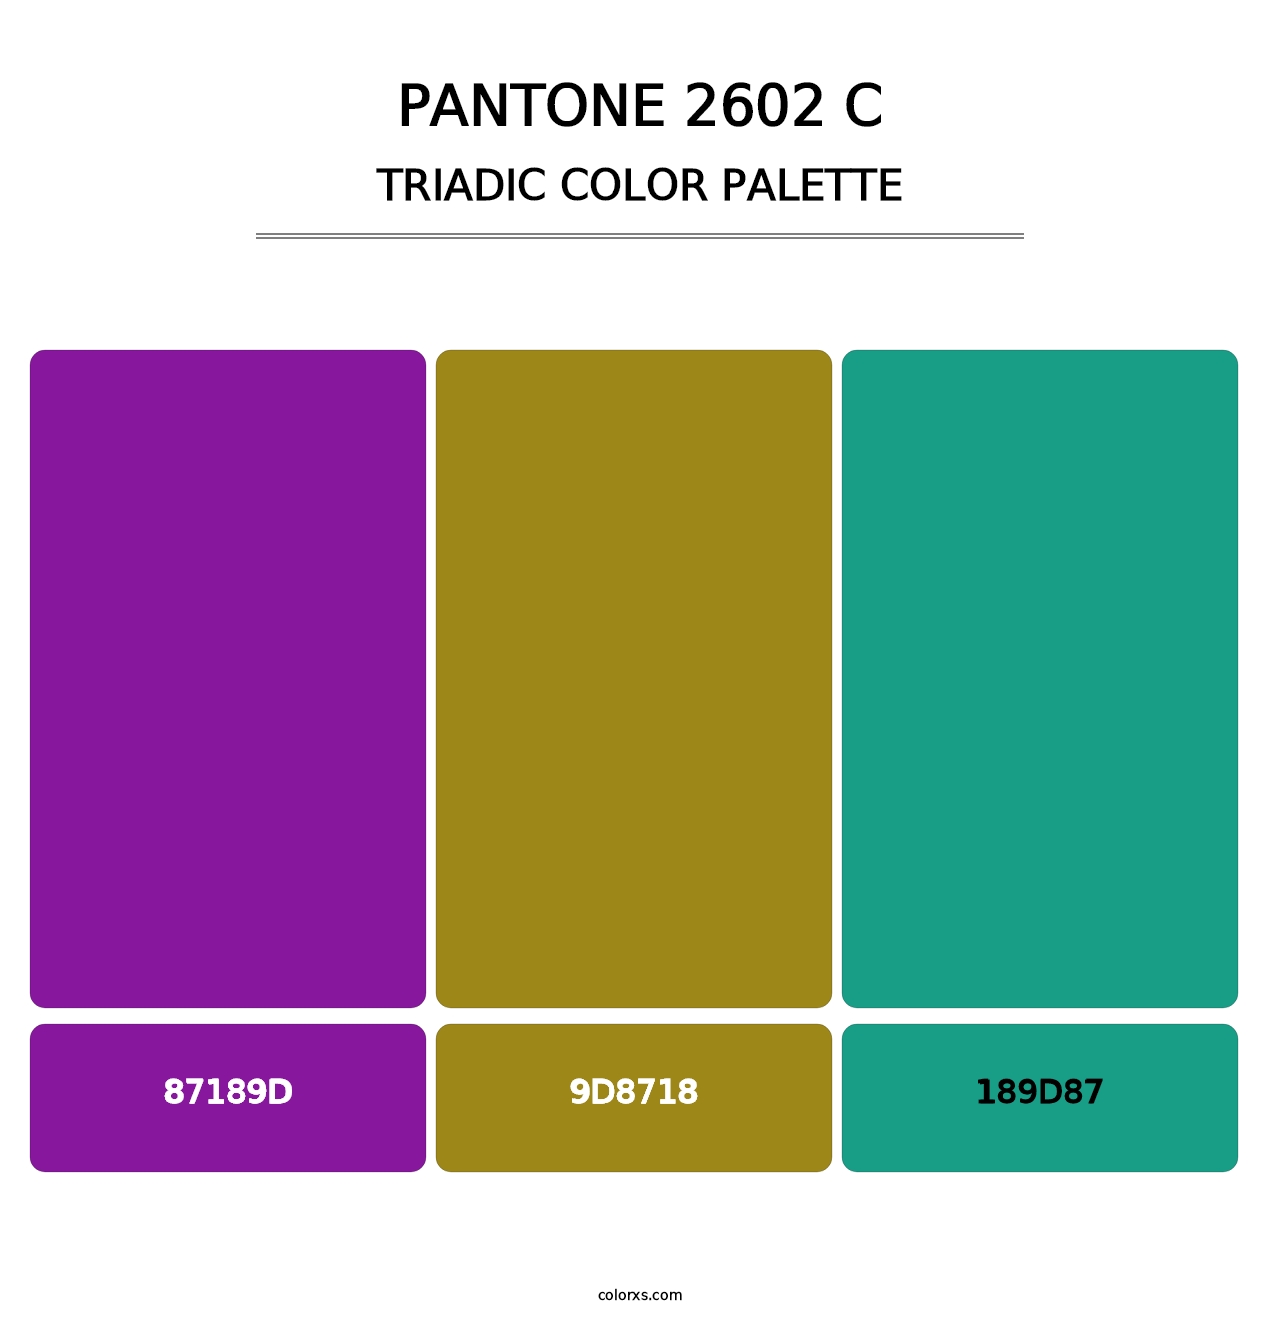 PANTONE 2602 C - Triadic Color Palette